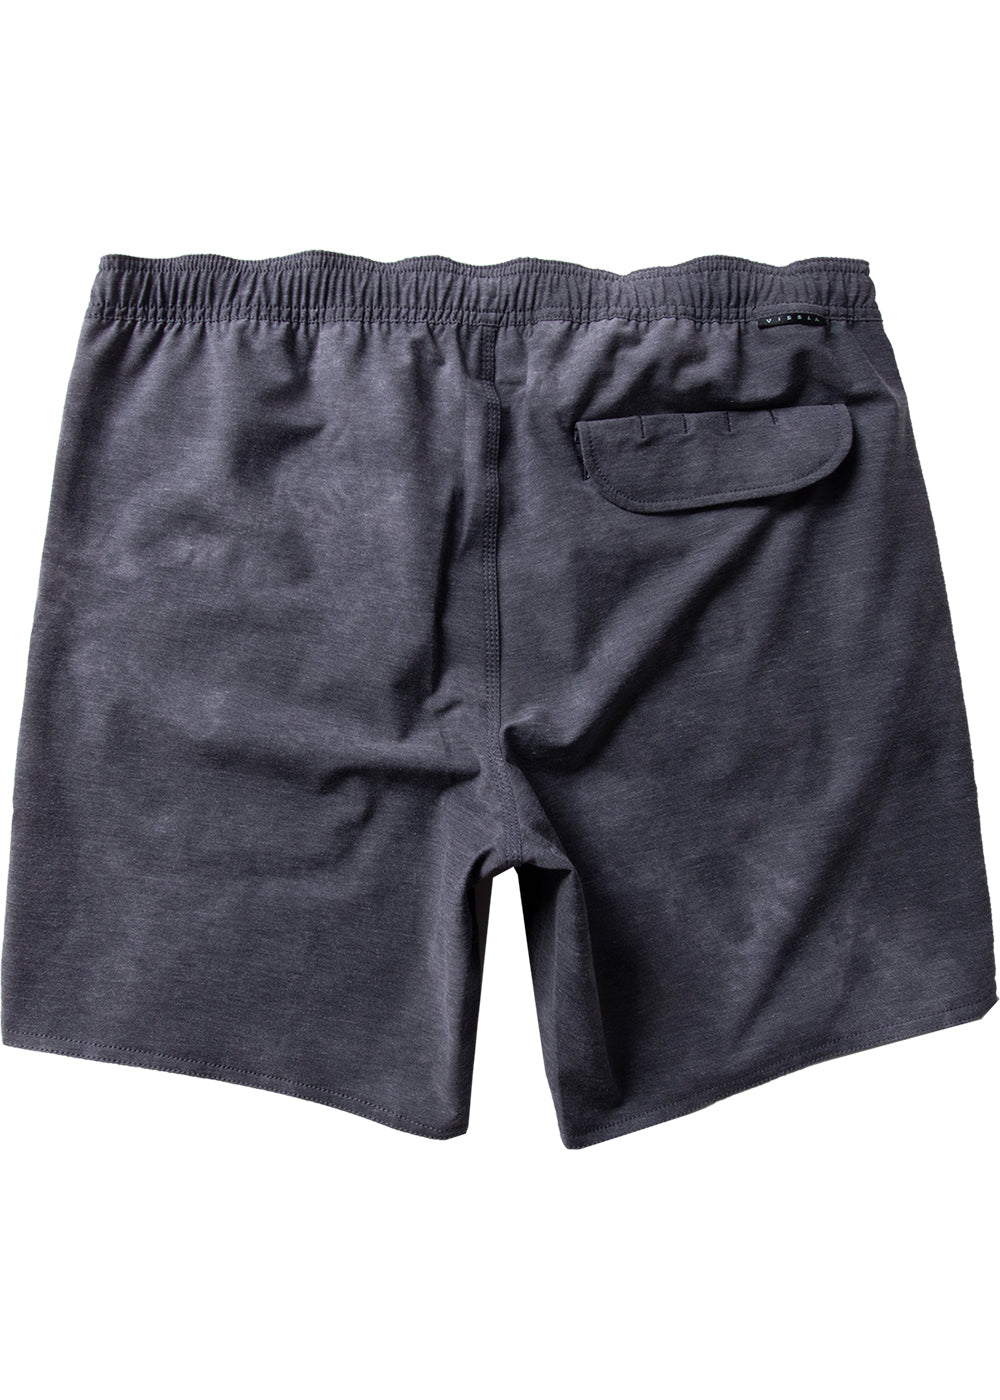 Vissla Men's Black Washed Solid Sets 17.5" Ecolastic short. Includes one velcro back pocket. Back View